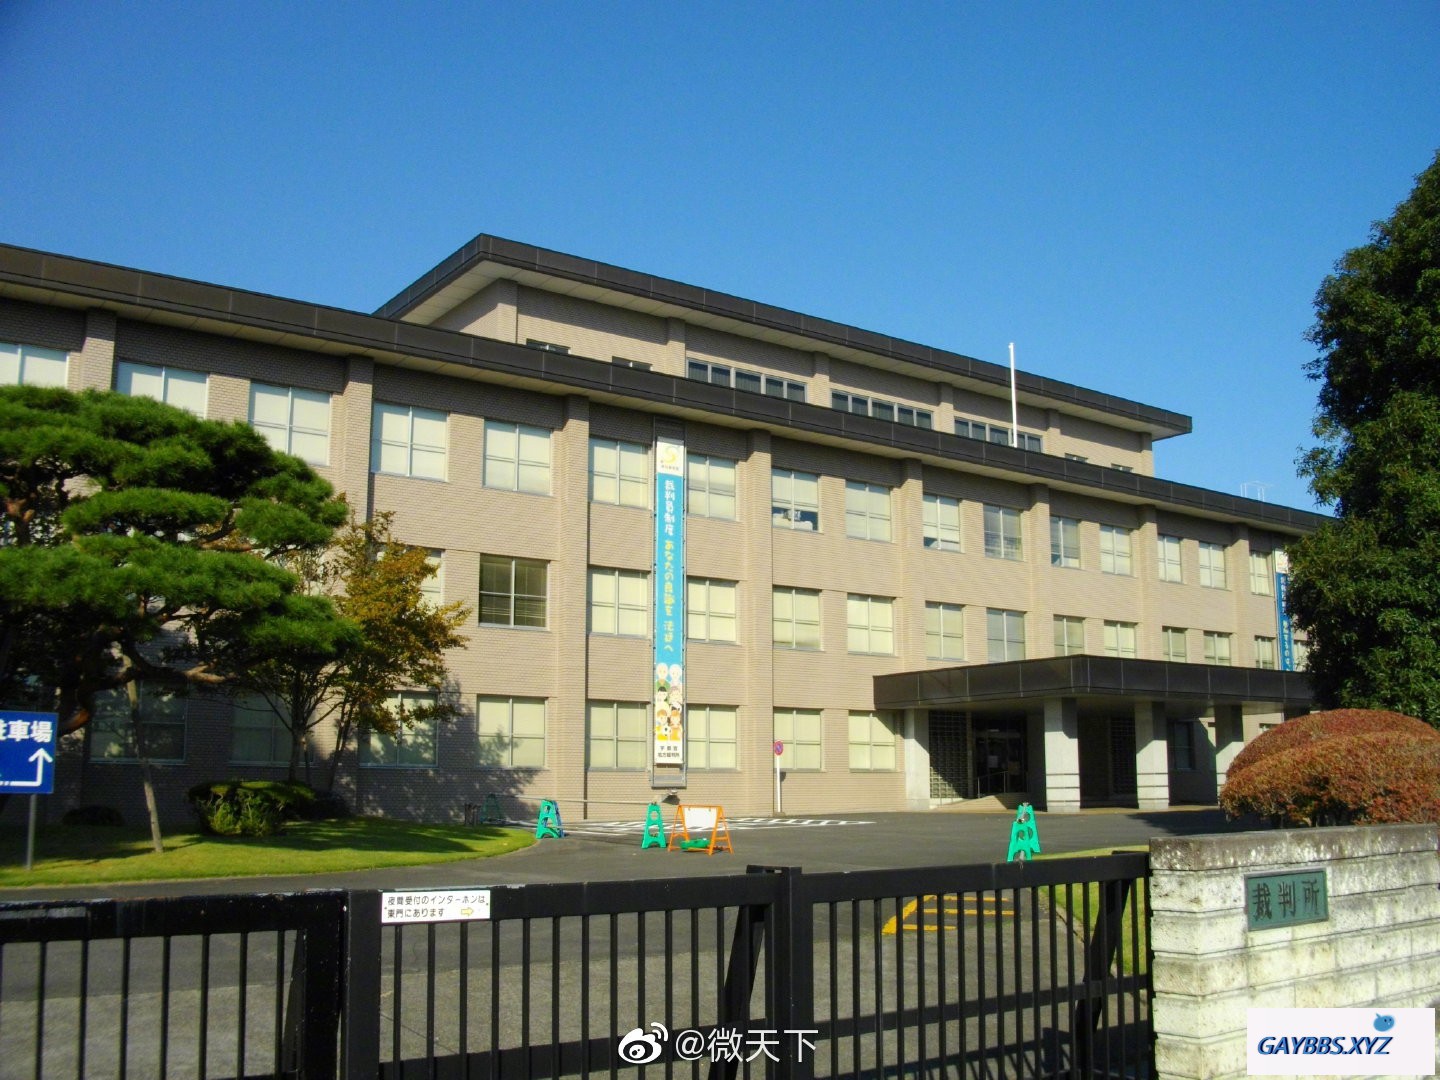 女同性伴侣出轨“男士” 日本法院判不忠赔110万日元 